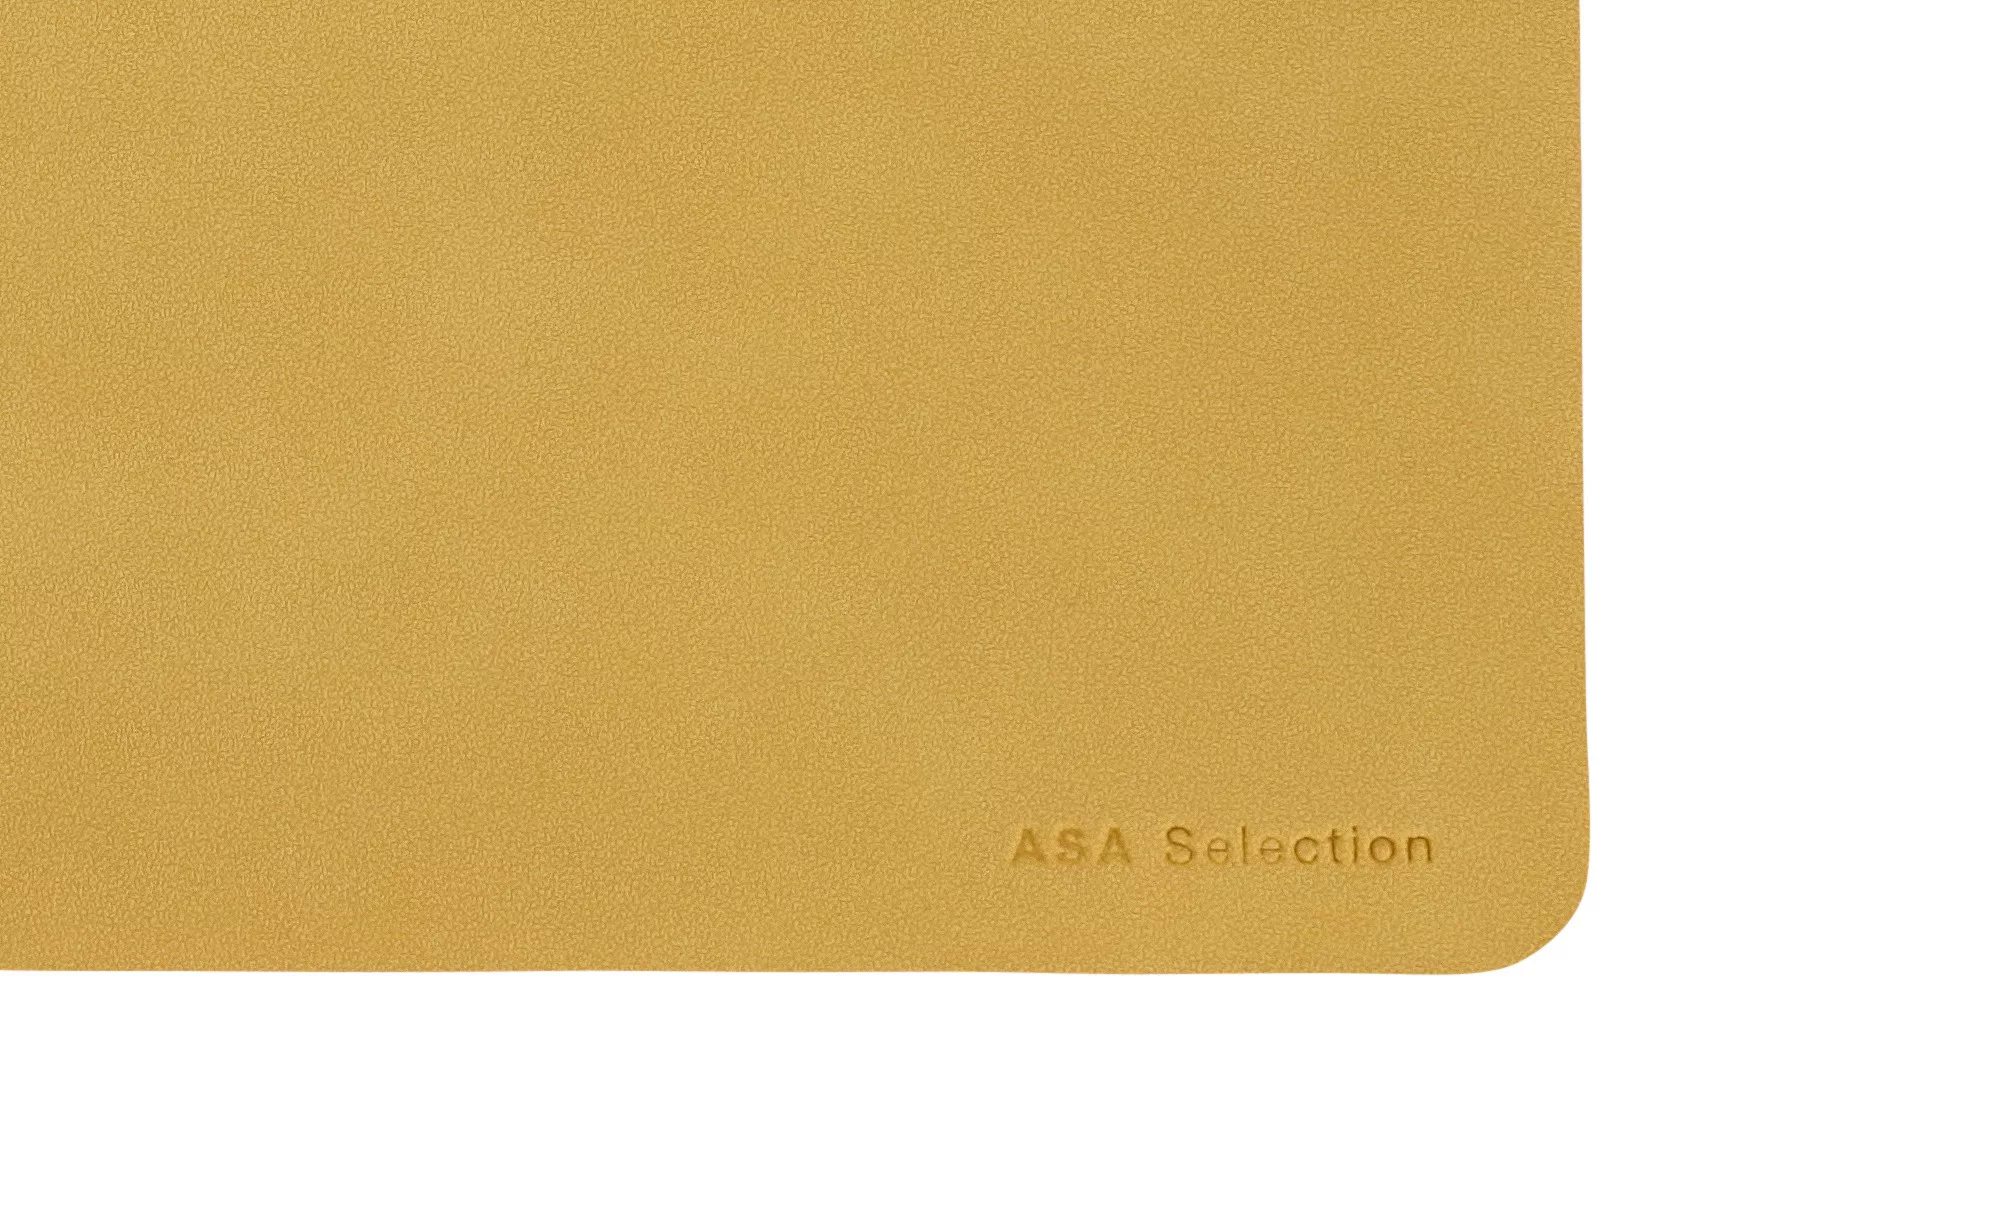 Tischset Soft Leather amber günstig online kaufen